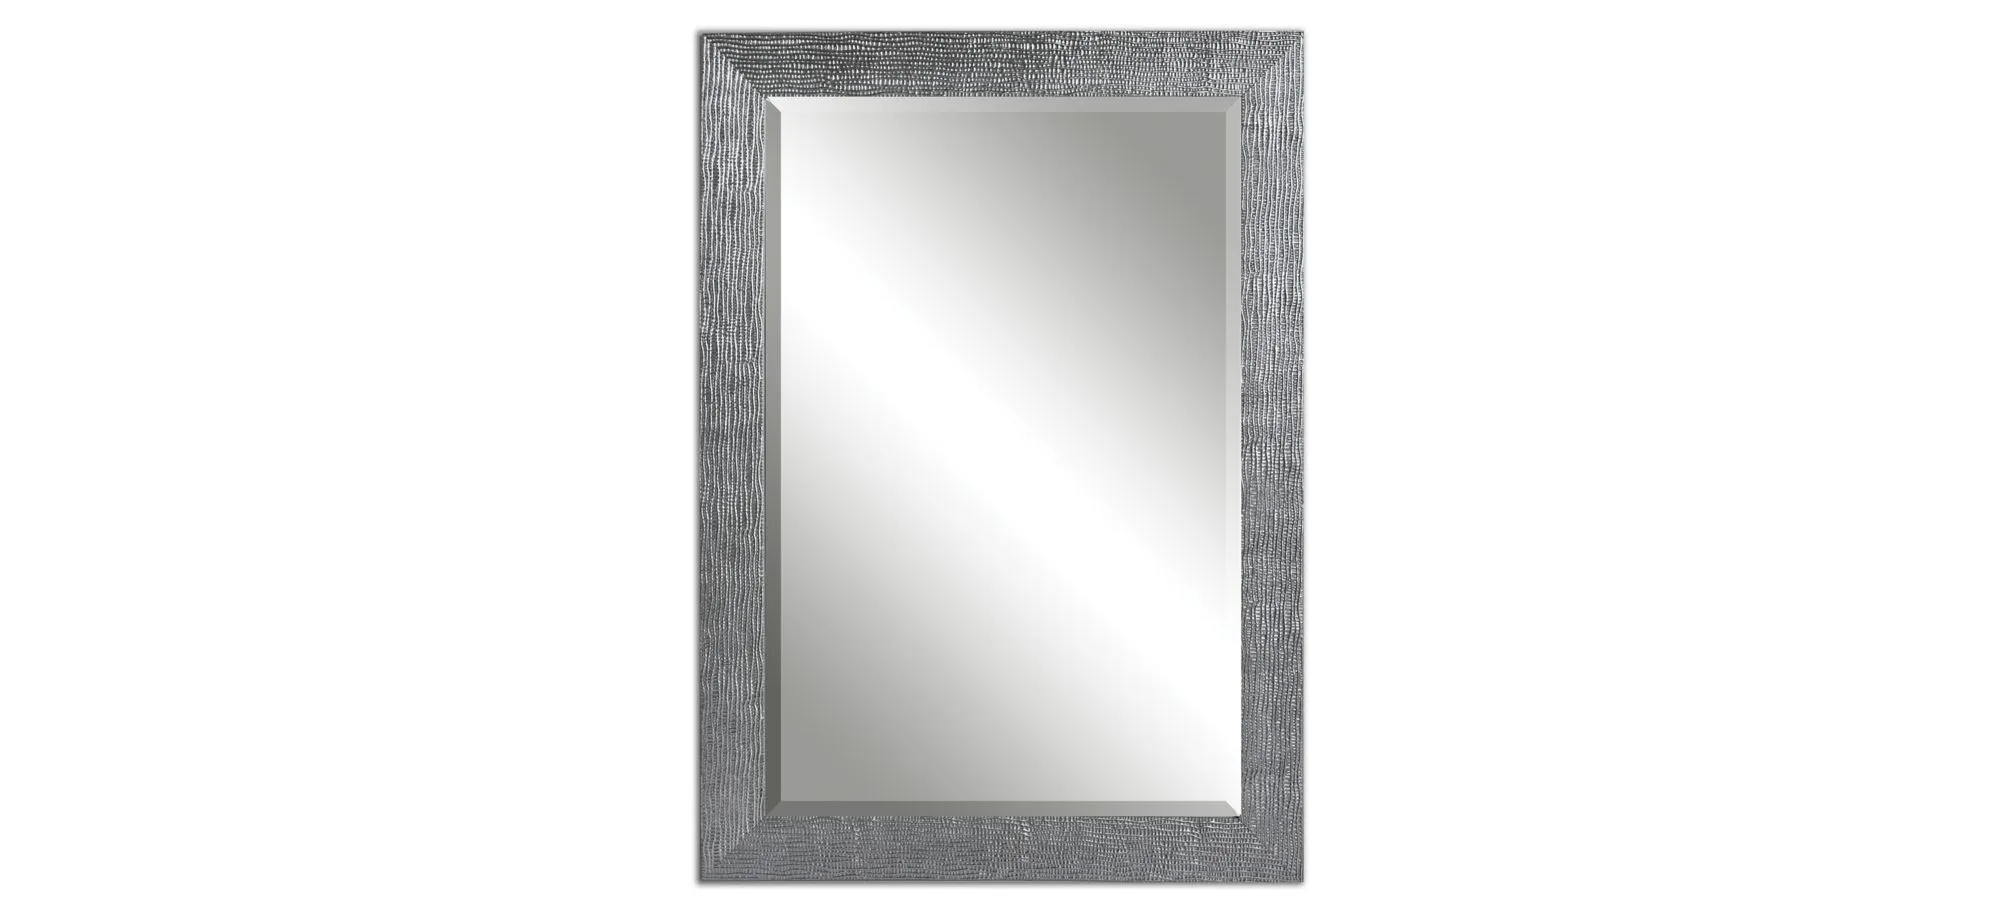 Tarek Wall Mirror in Silver by Uttermost